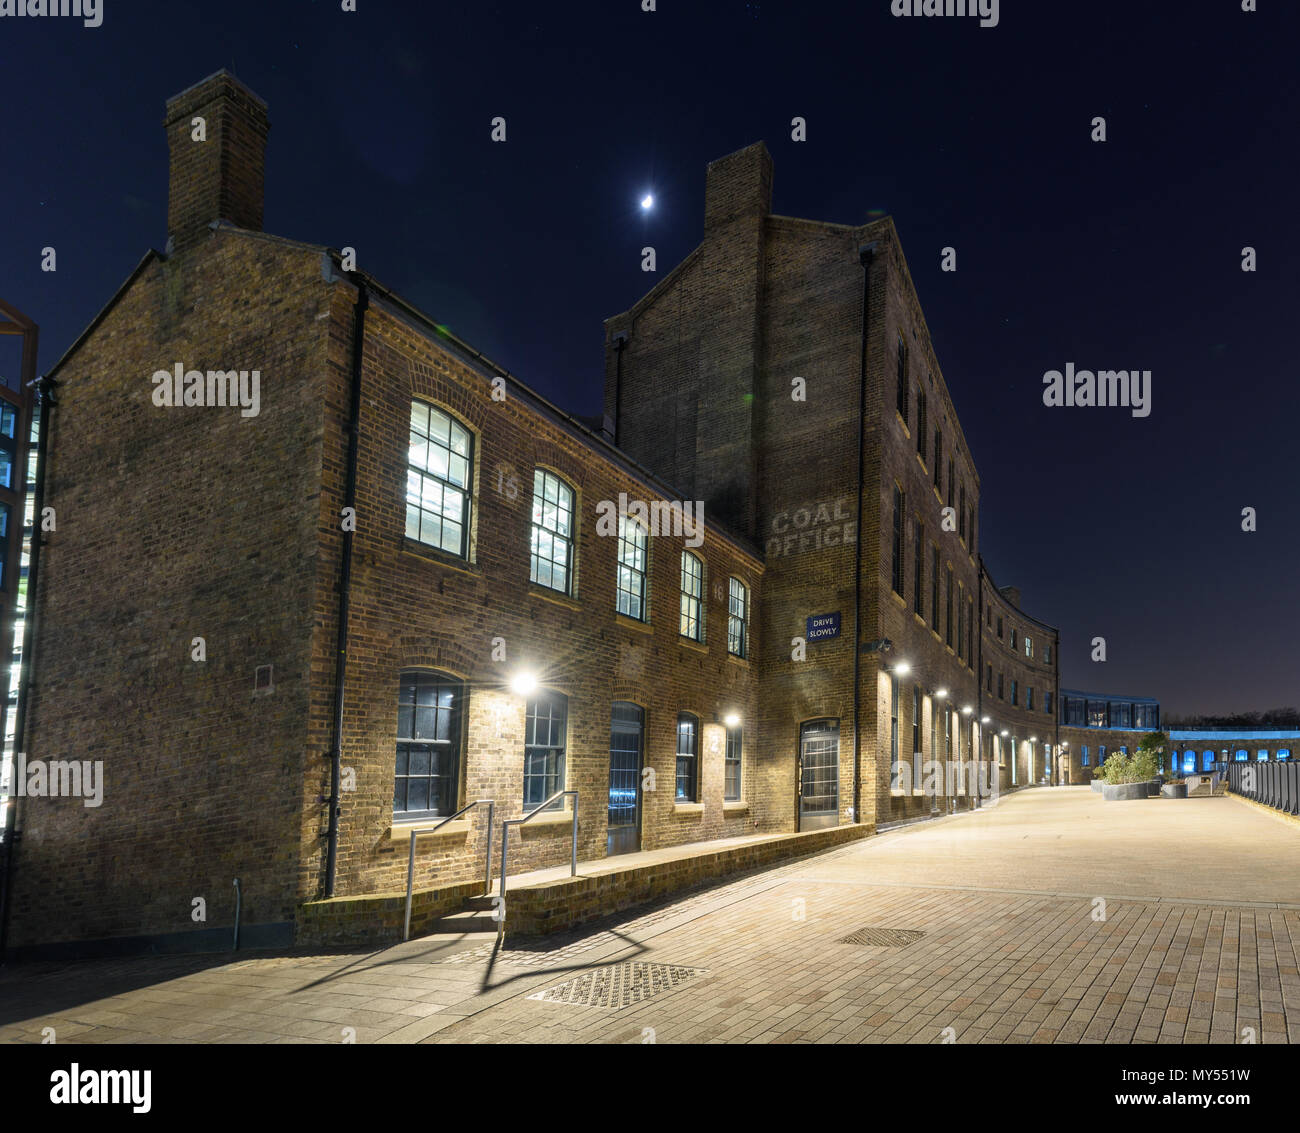 London, England, UK - 22. Februar 2018: ein halber Mond hängt in den Nachthimmel über der Kohle Büro, Teil von der King's Cross Stadterneuerung Projekt Stockfoto